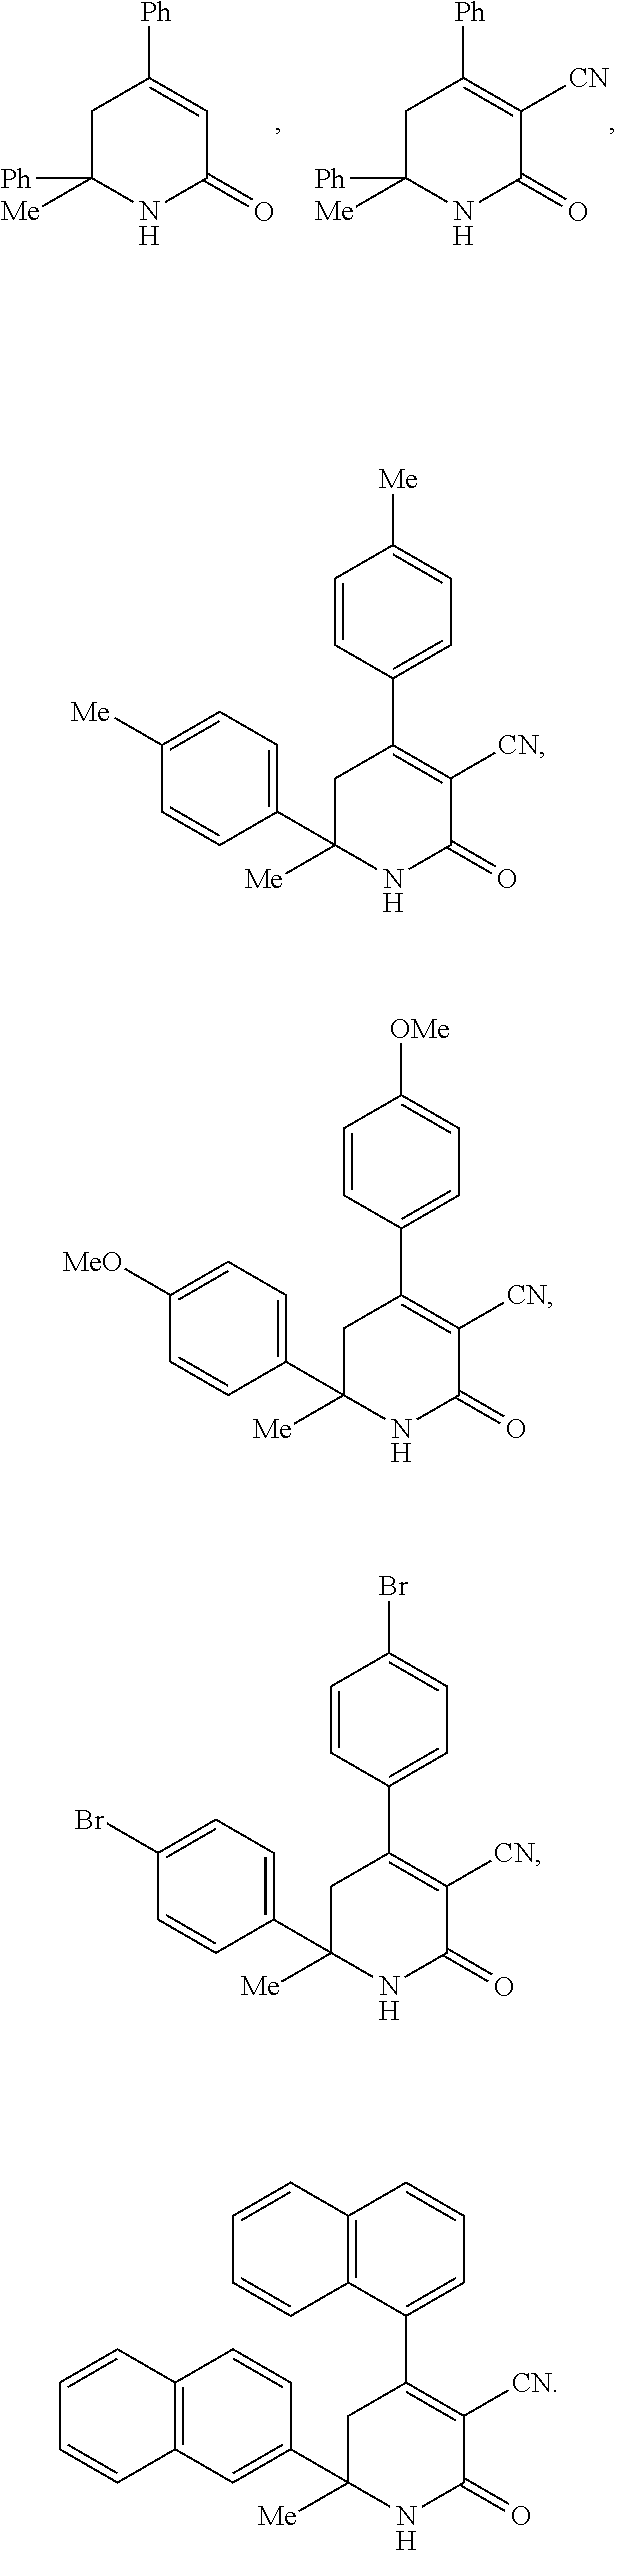 Aryl dihydropyridinone and piperidinone mgat2 inhibitors